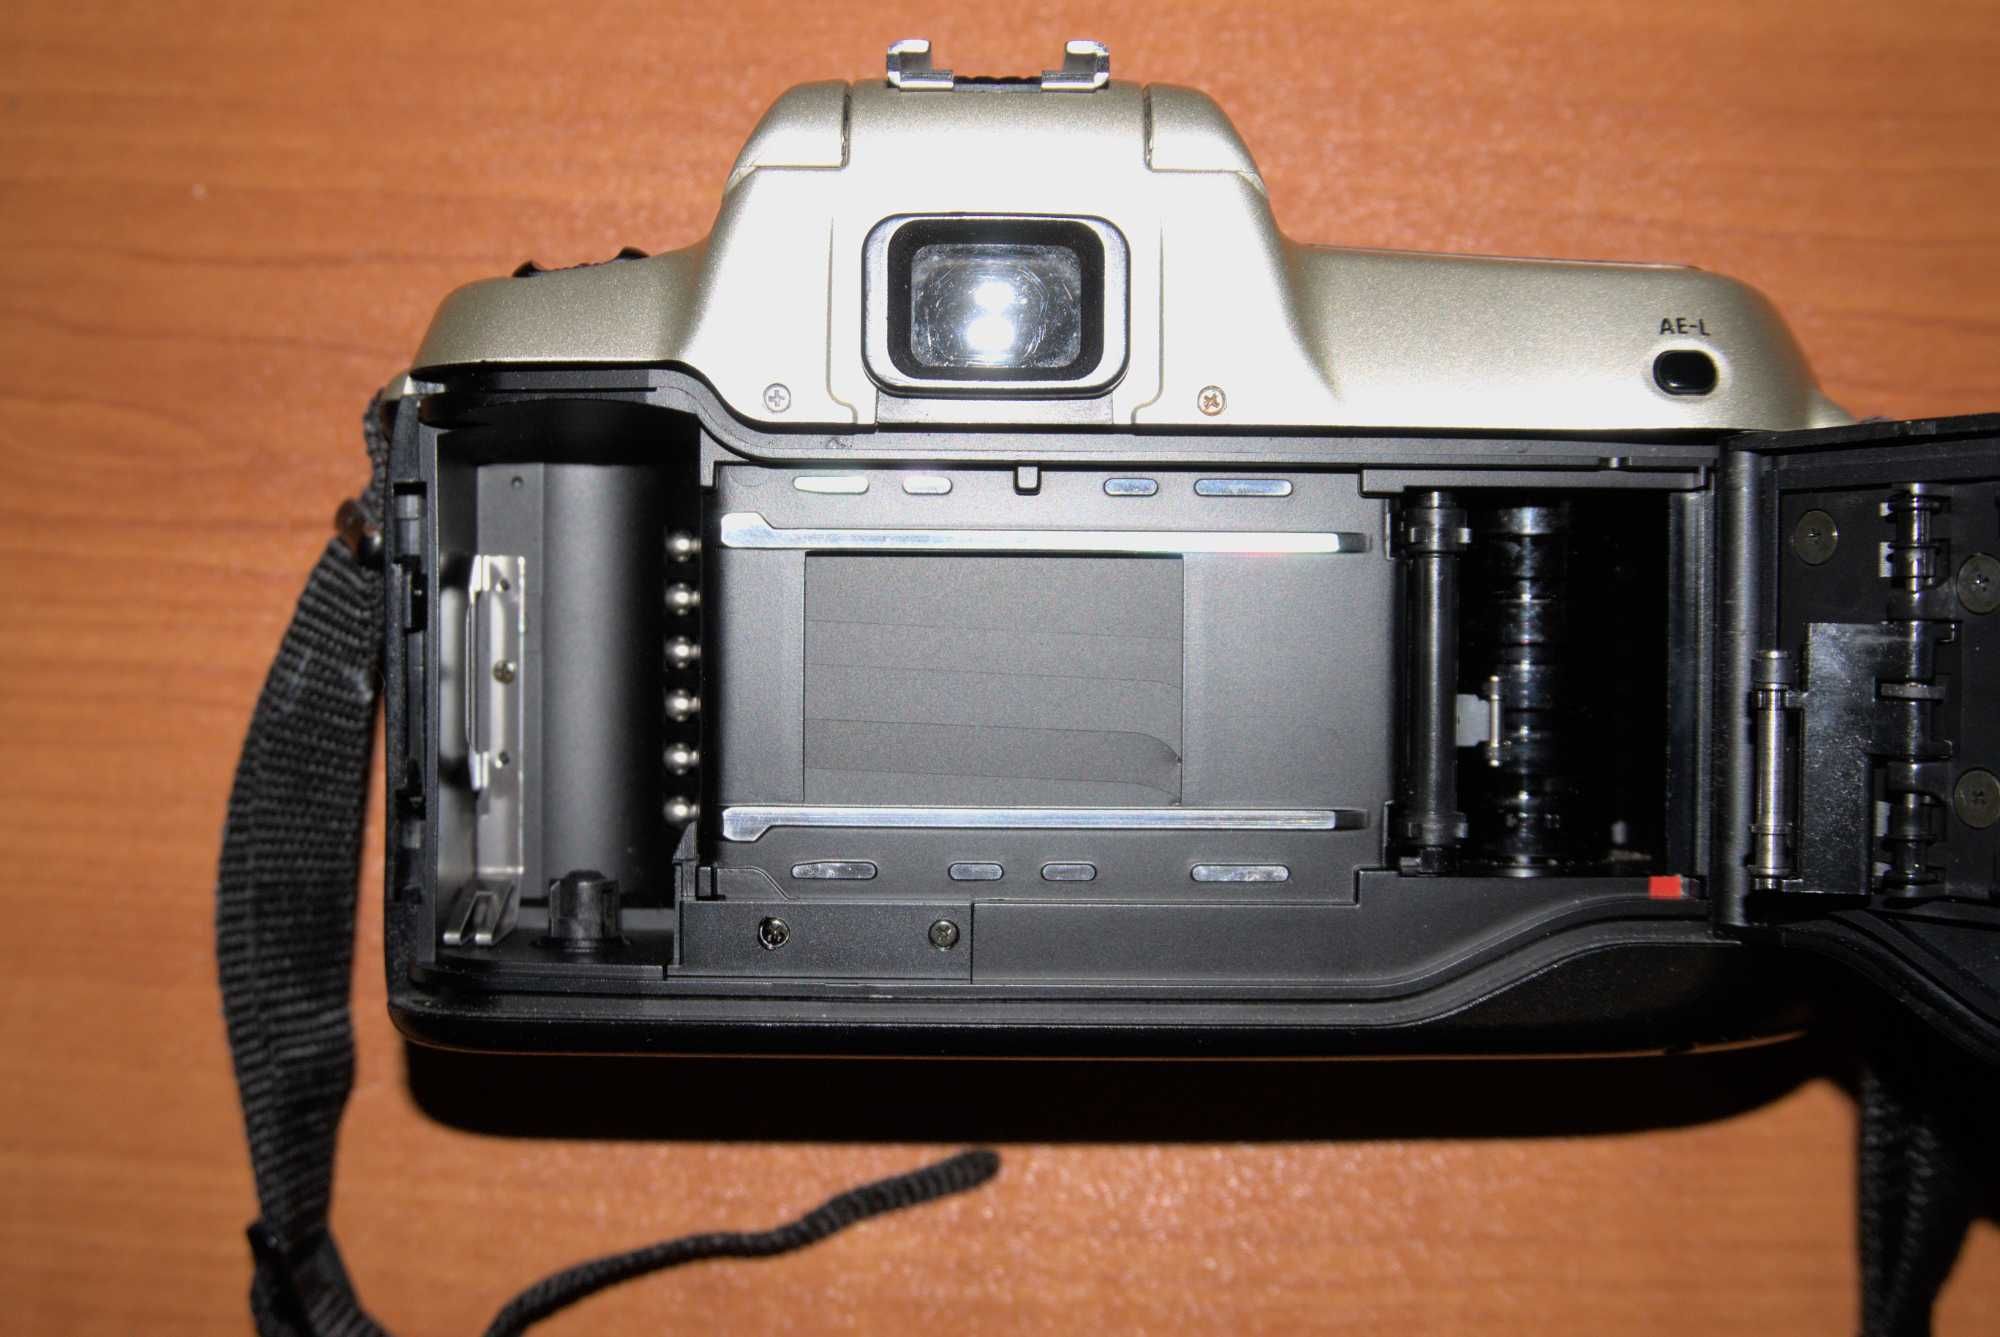 Nikon F50 плівковий фотоапарат